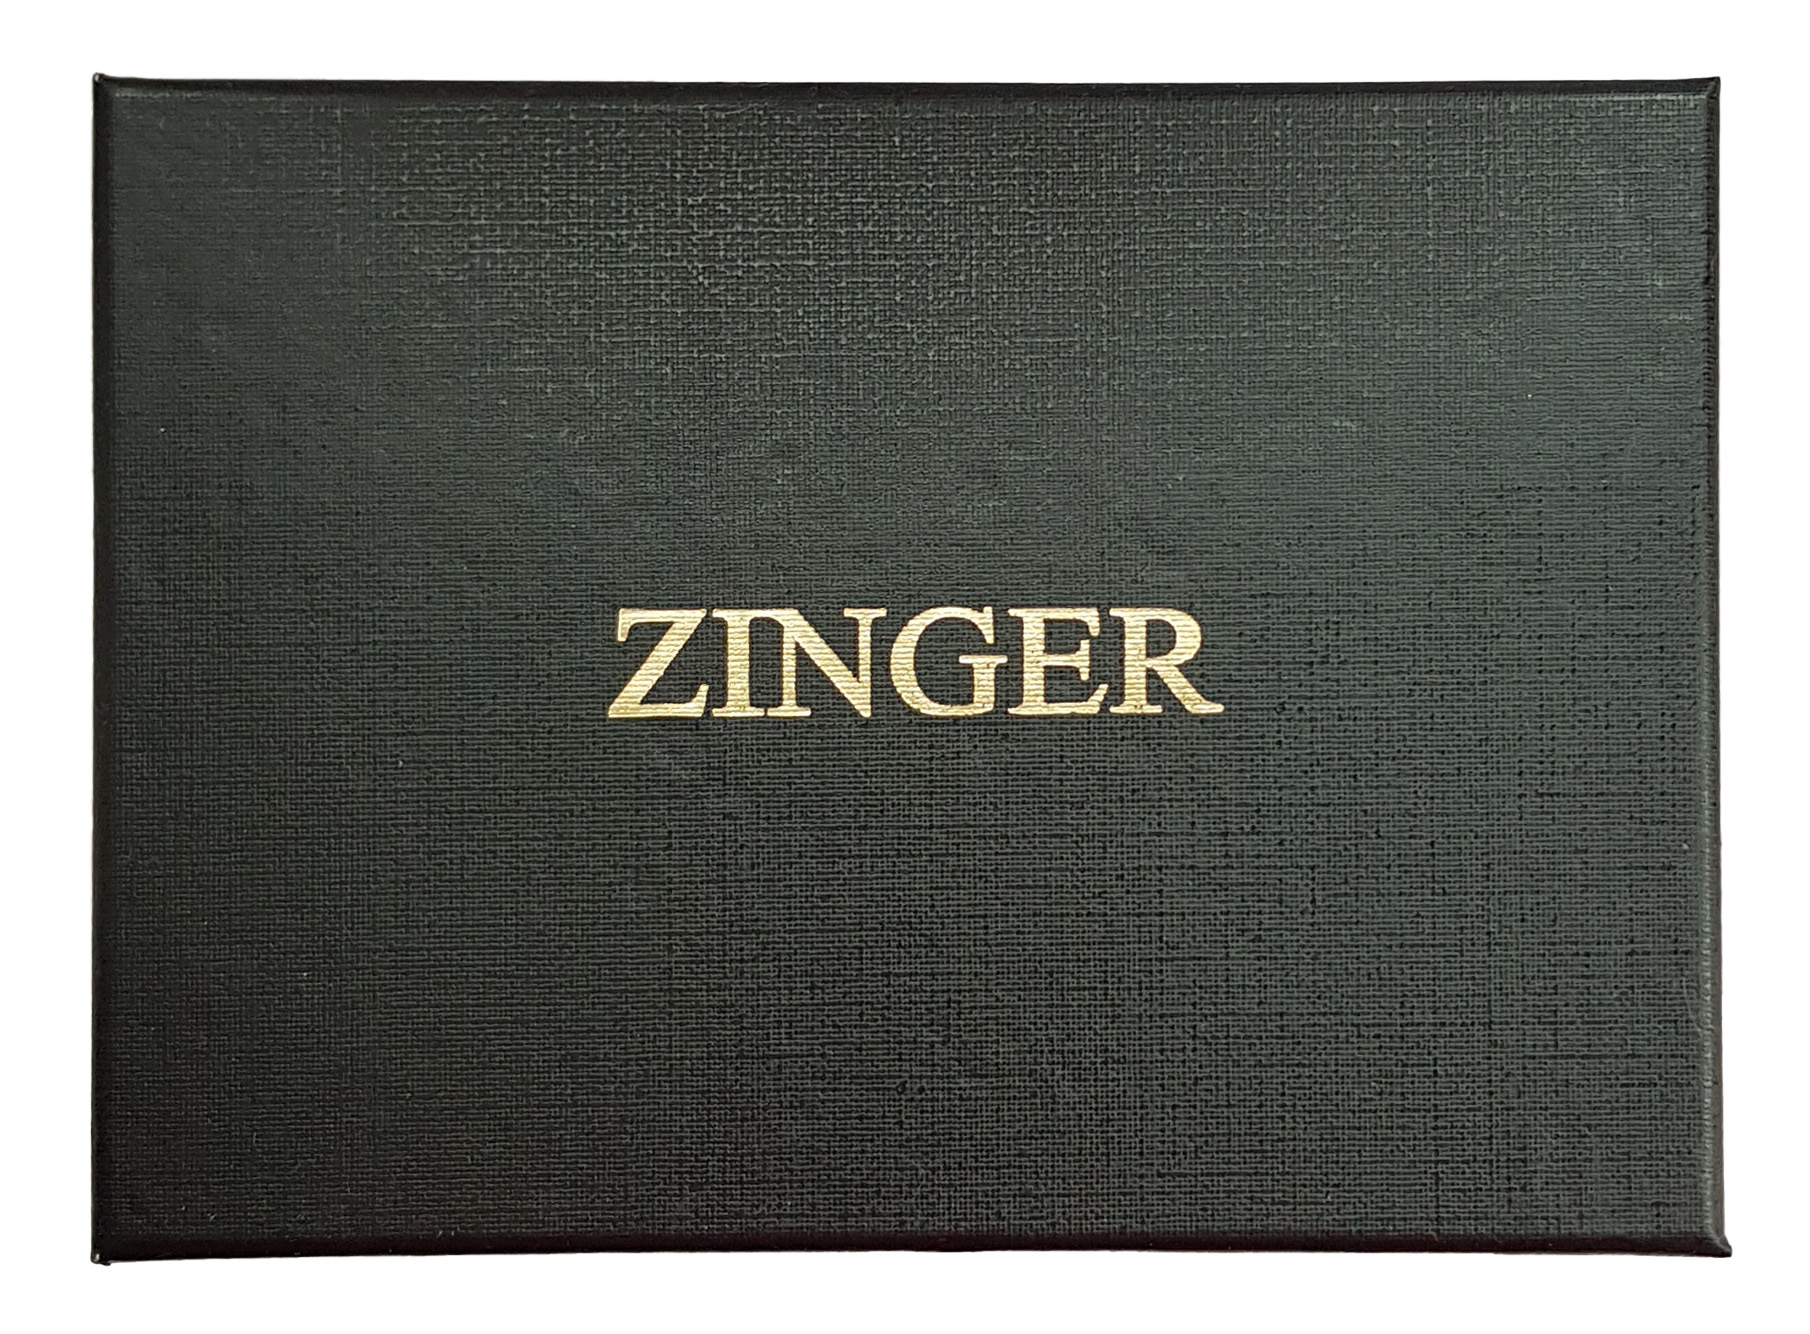 Маникюрный набор Zinger Premium-качества бордовый 9 предметов + пинцет маникюрный набор premium качества zinger msfe 701 3 sm 6 предметов пинцет темно серый